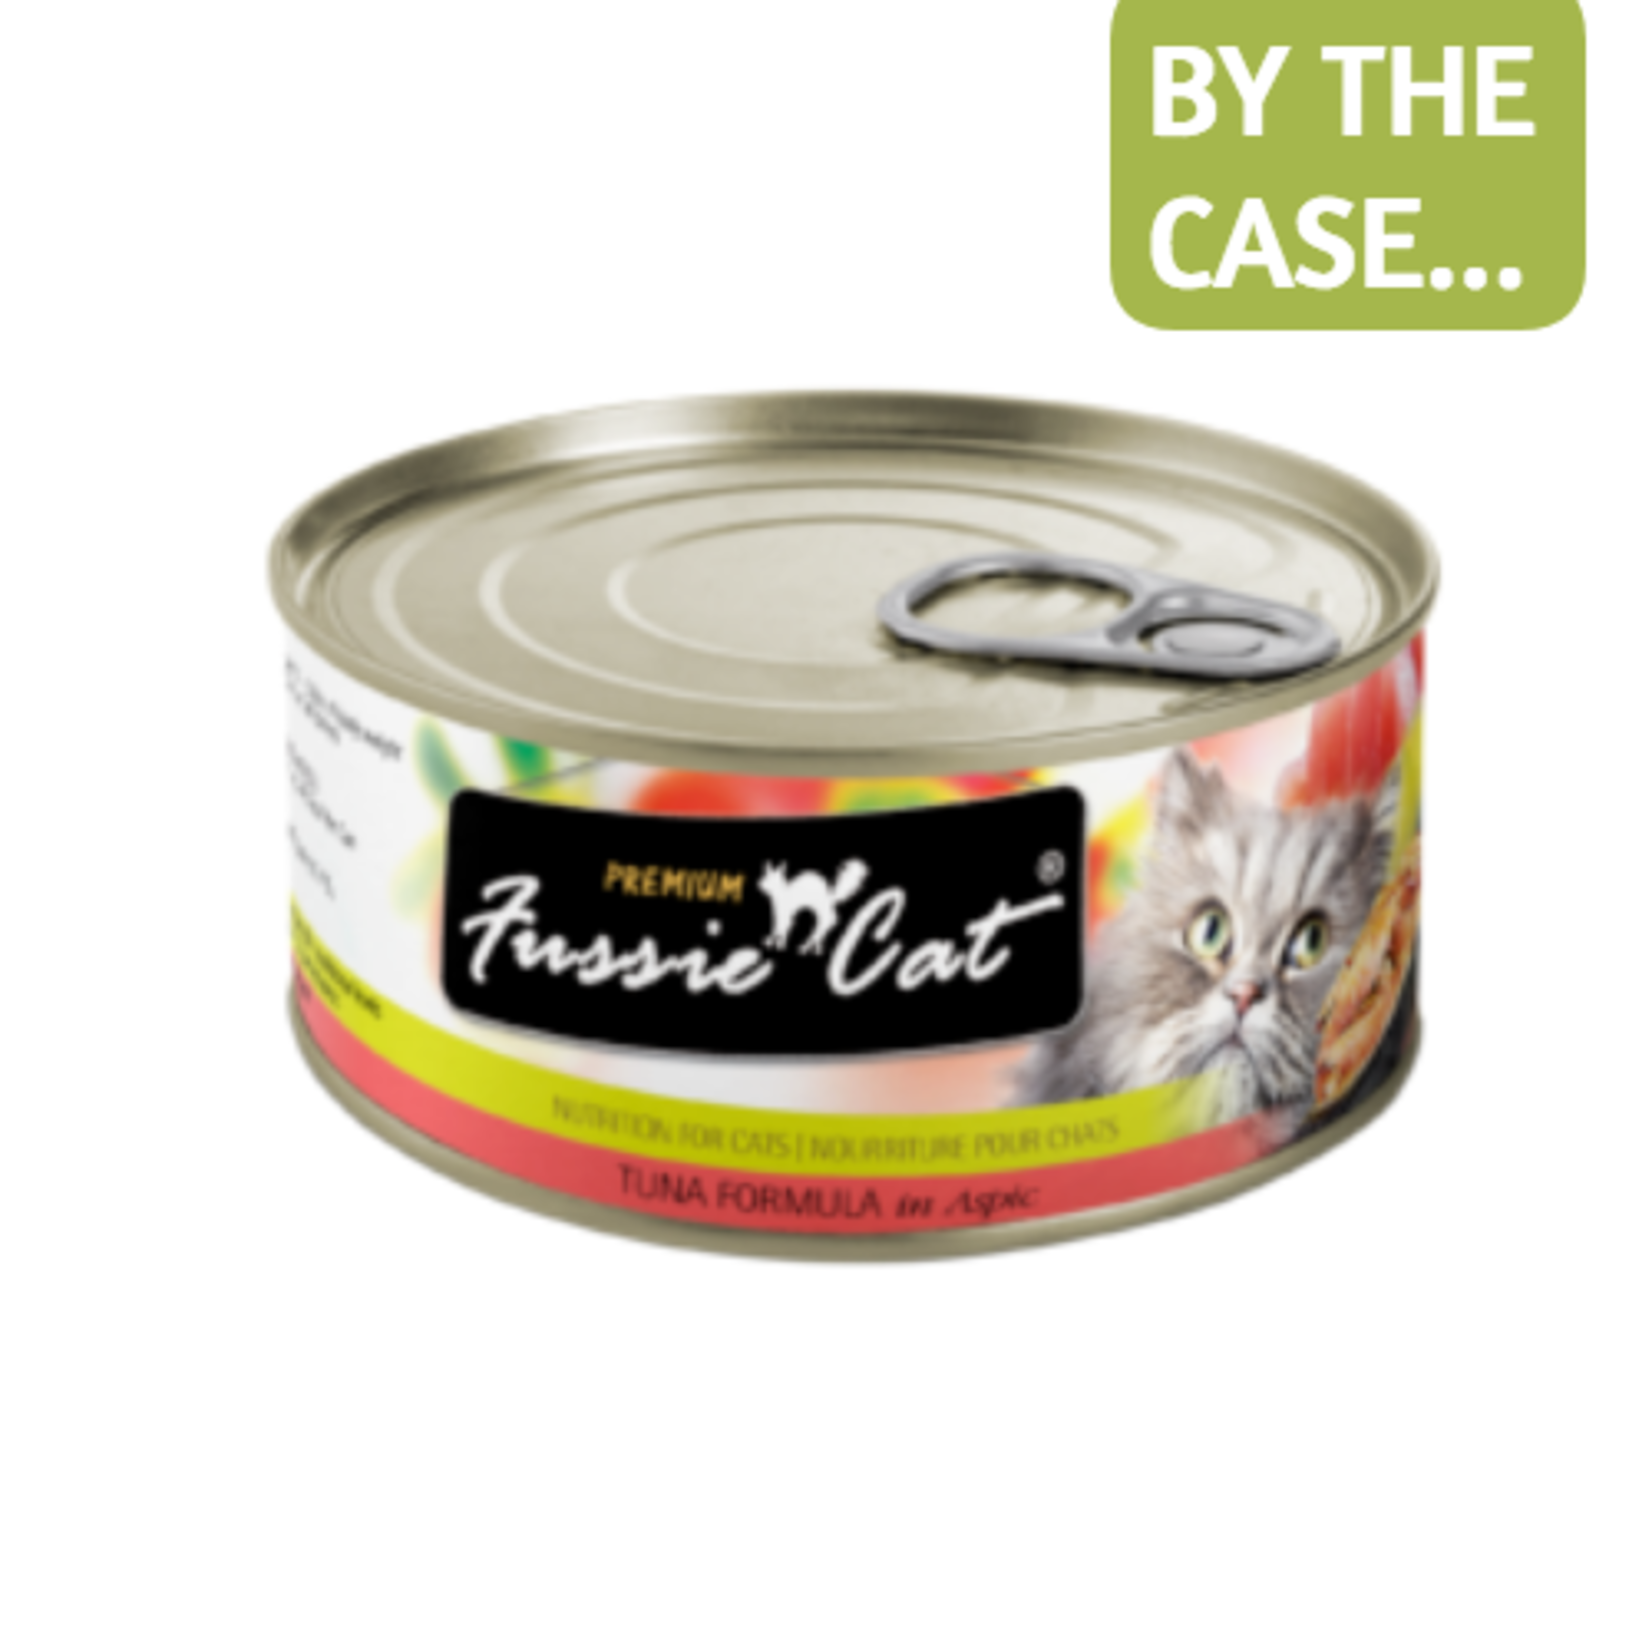 Fussie Cat Fussie Cat Wet Cat Food Tuna Formula in Aspic 2.8oz Can Grain Free